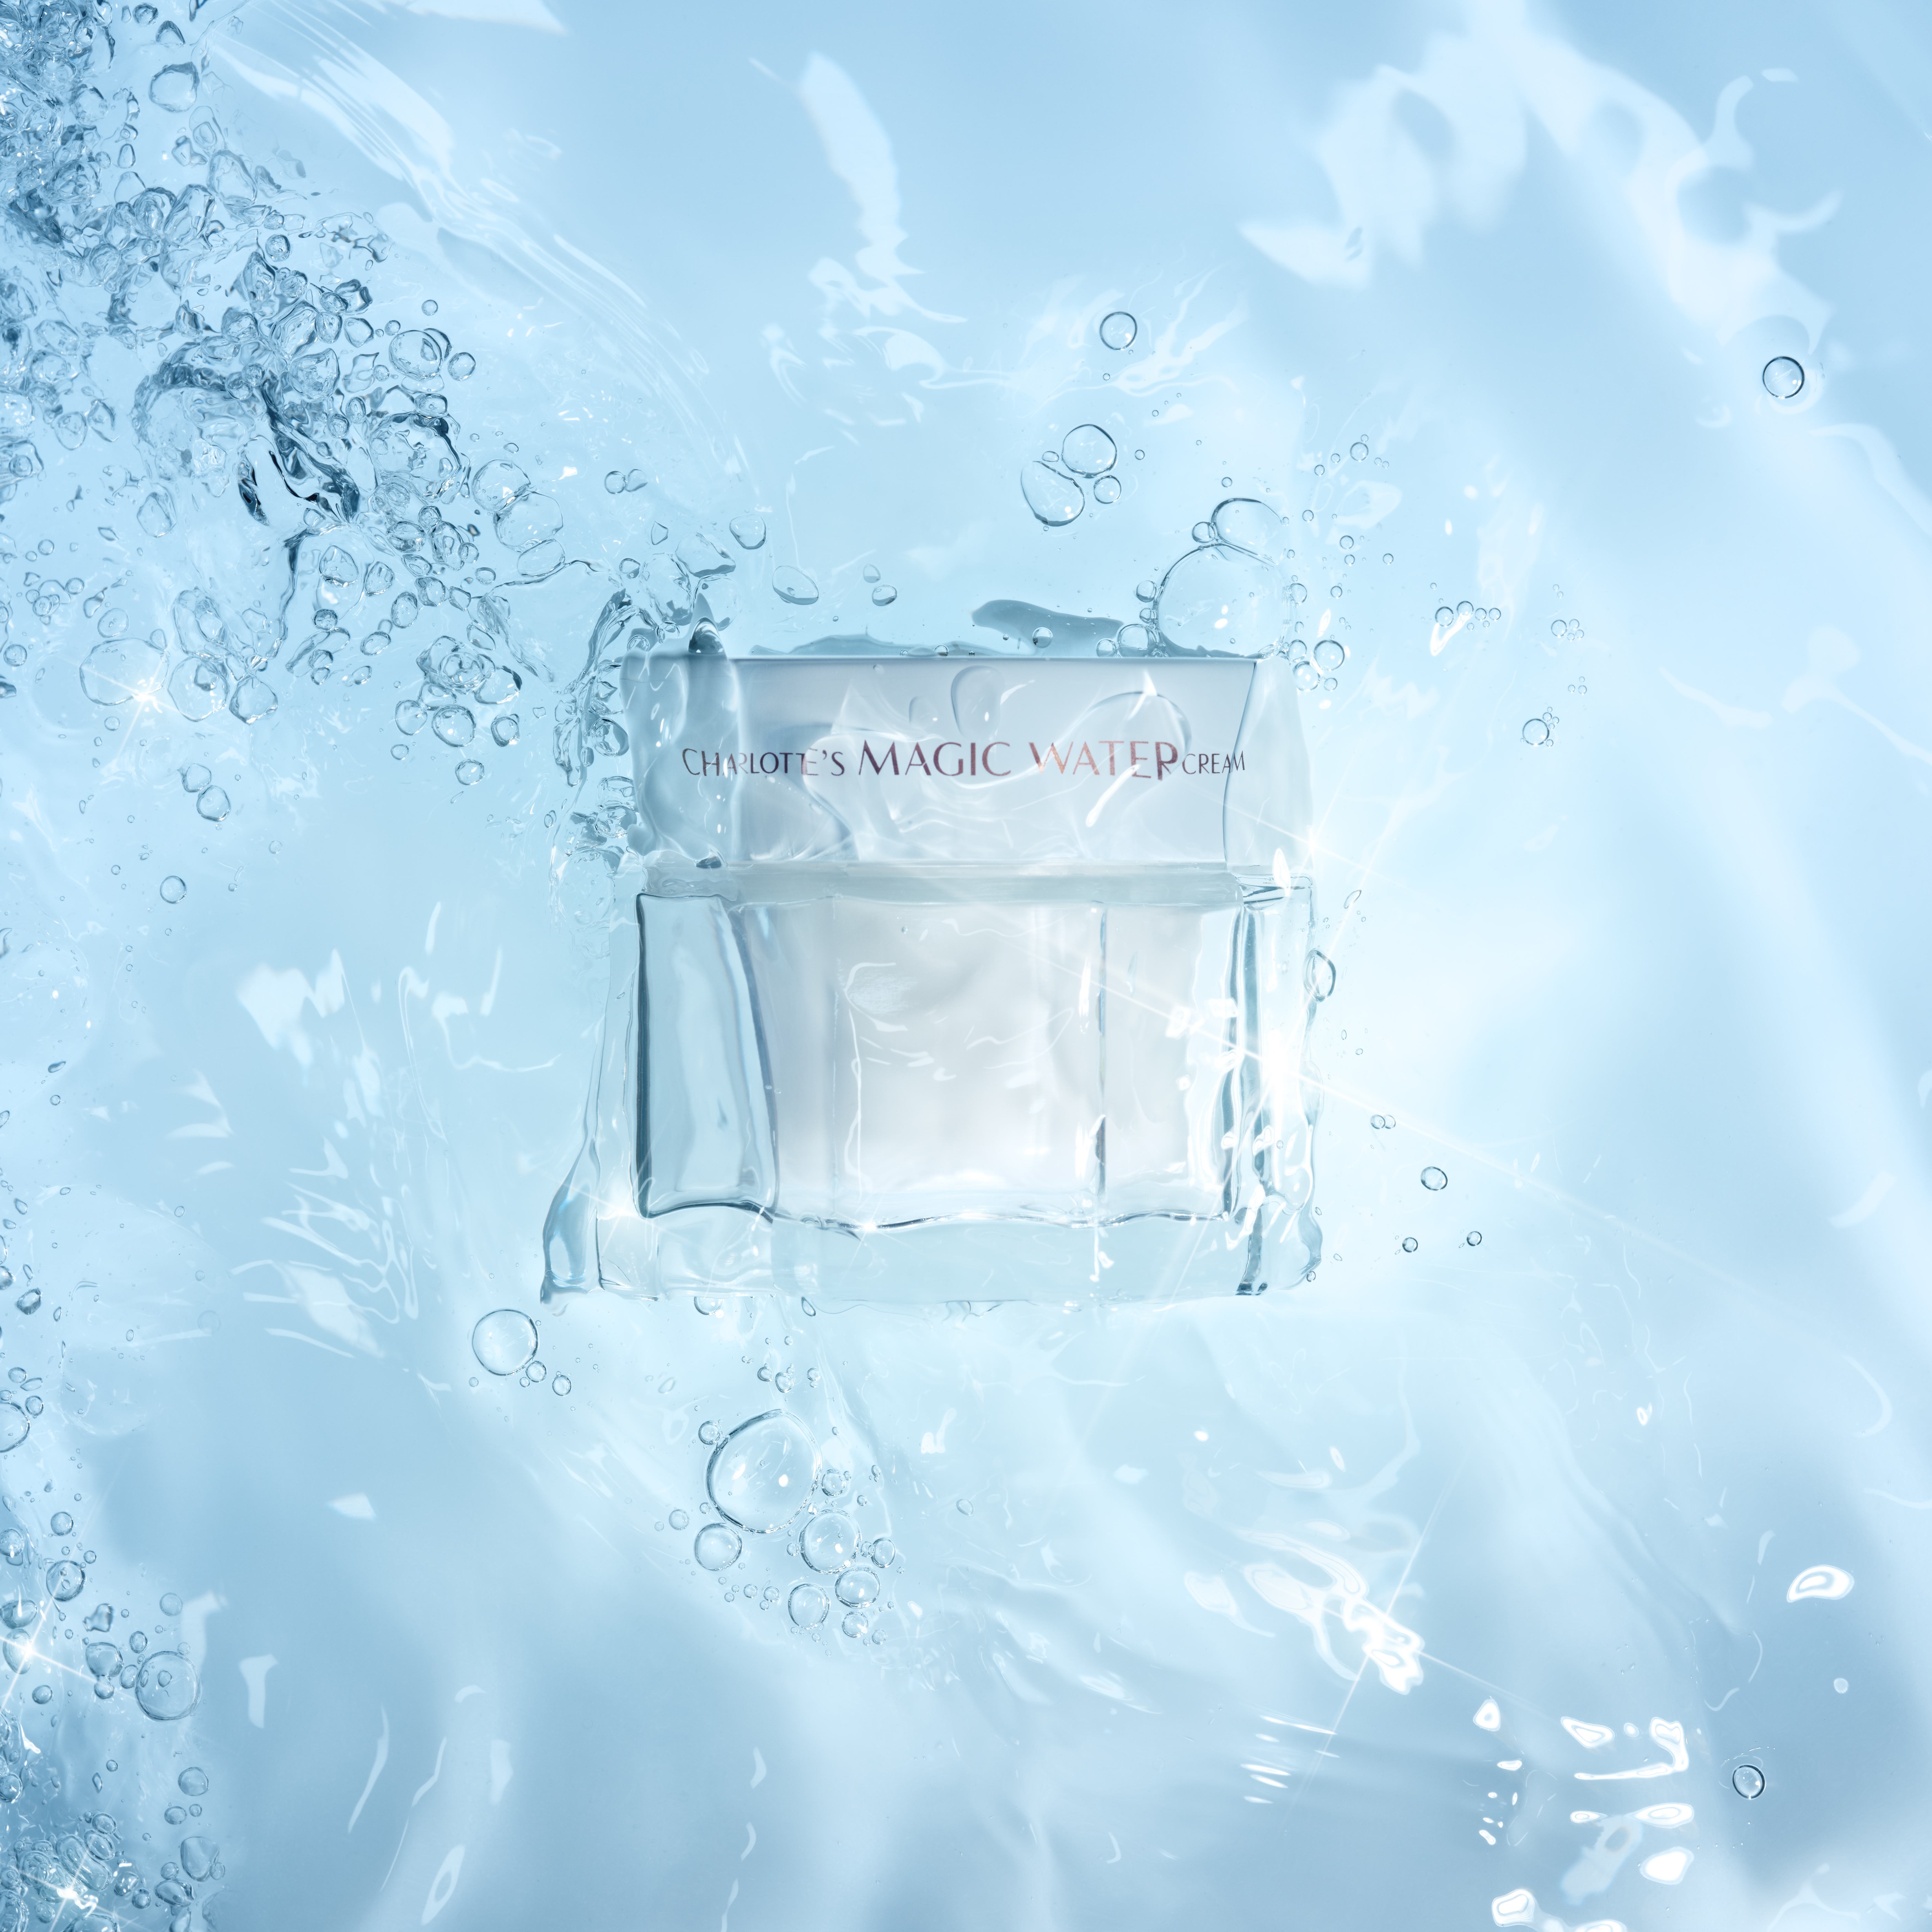 Stillleben − Charlotte's Magic Water Cream